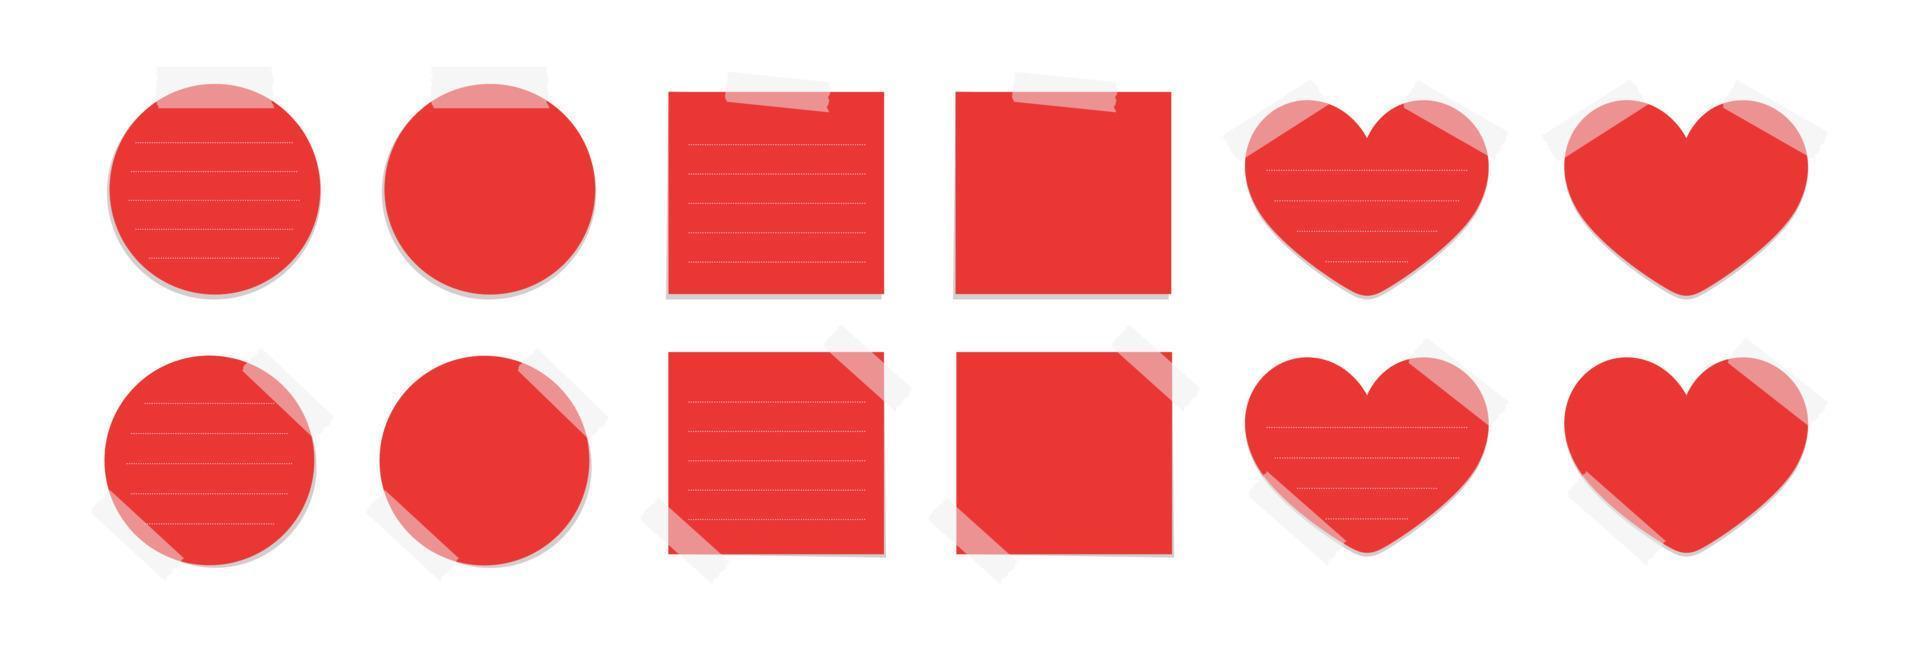 röd klibbig posta notera mall attrapp uppsättning. tejpade kontor PM papper vektor illustration.